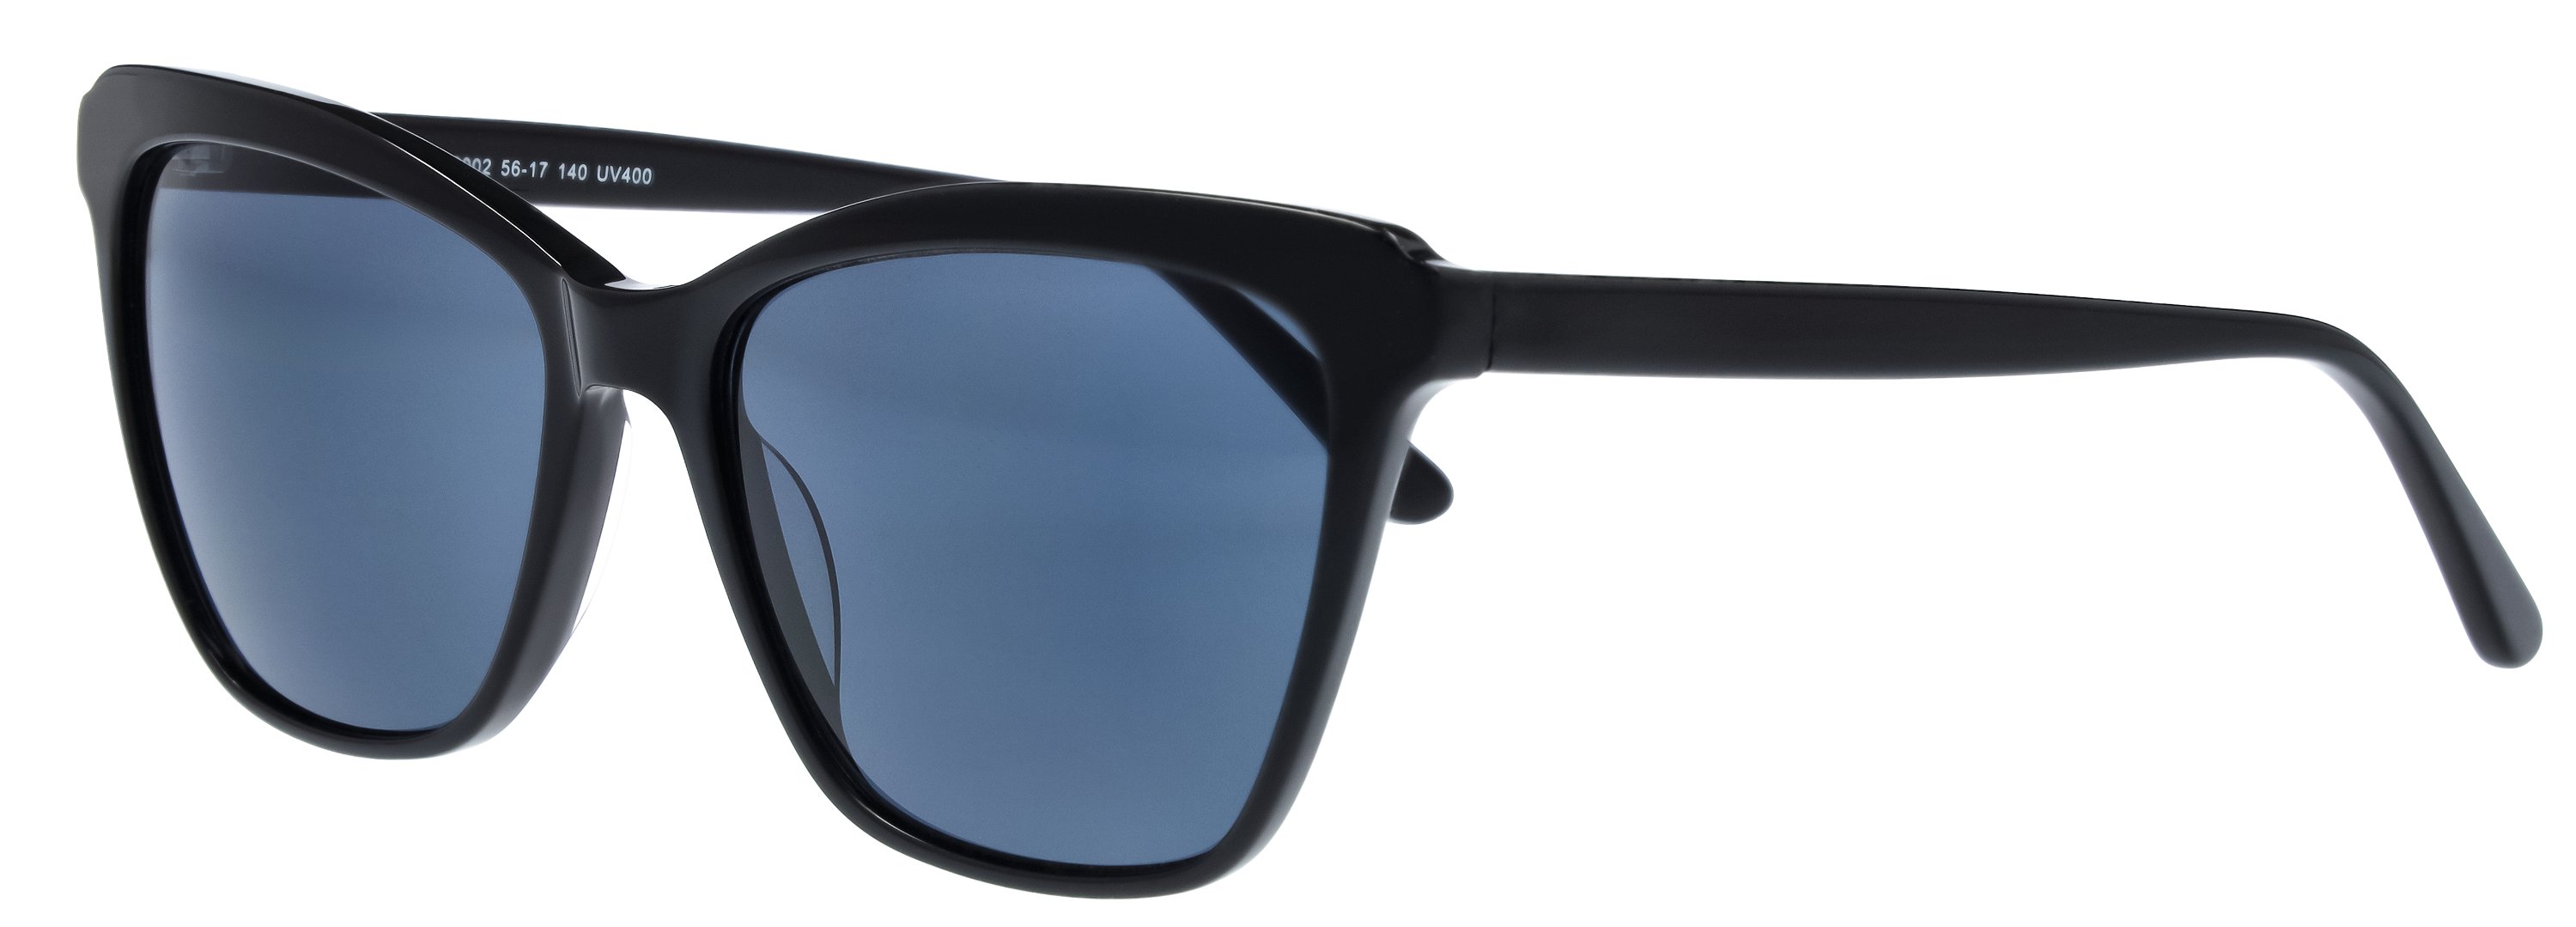 Das Bild zeigt die Sonnenbrille 149002 von der Marke Abele Optik in schwarz.